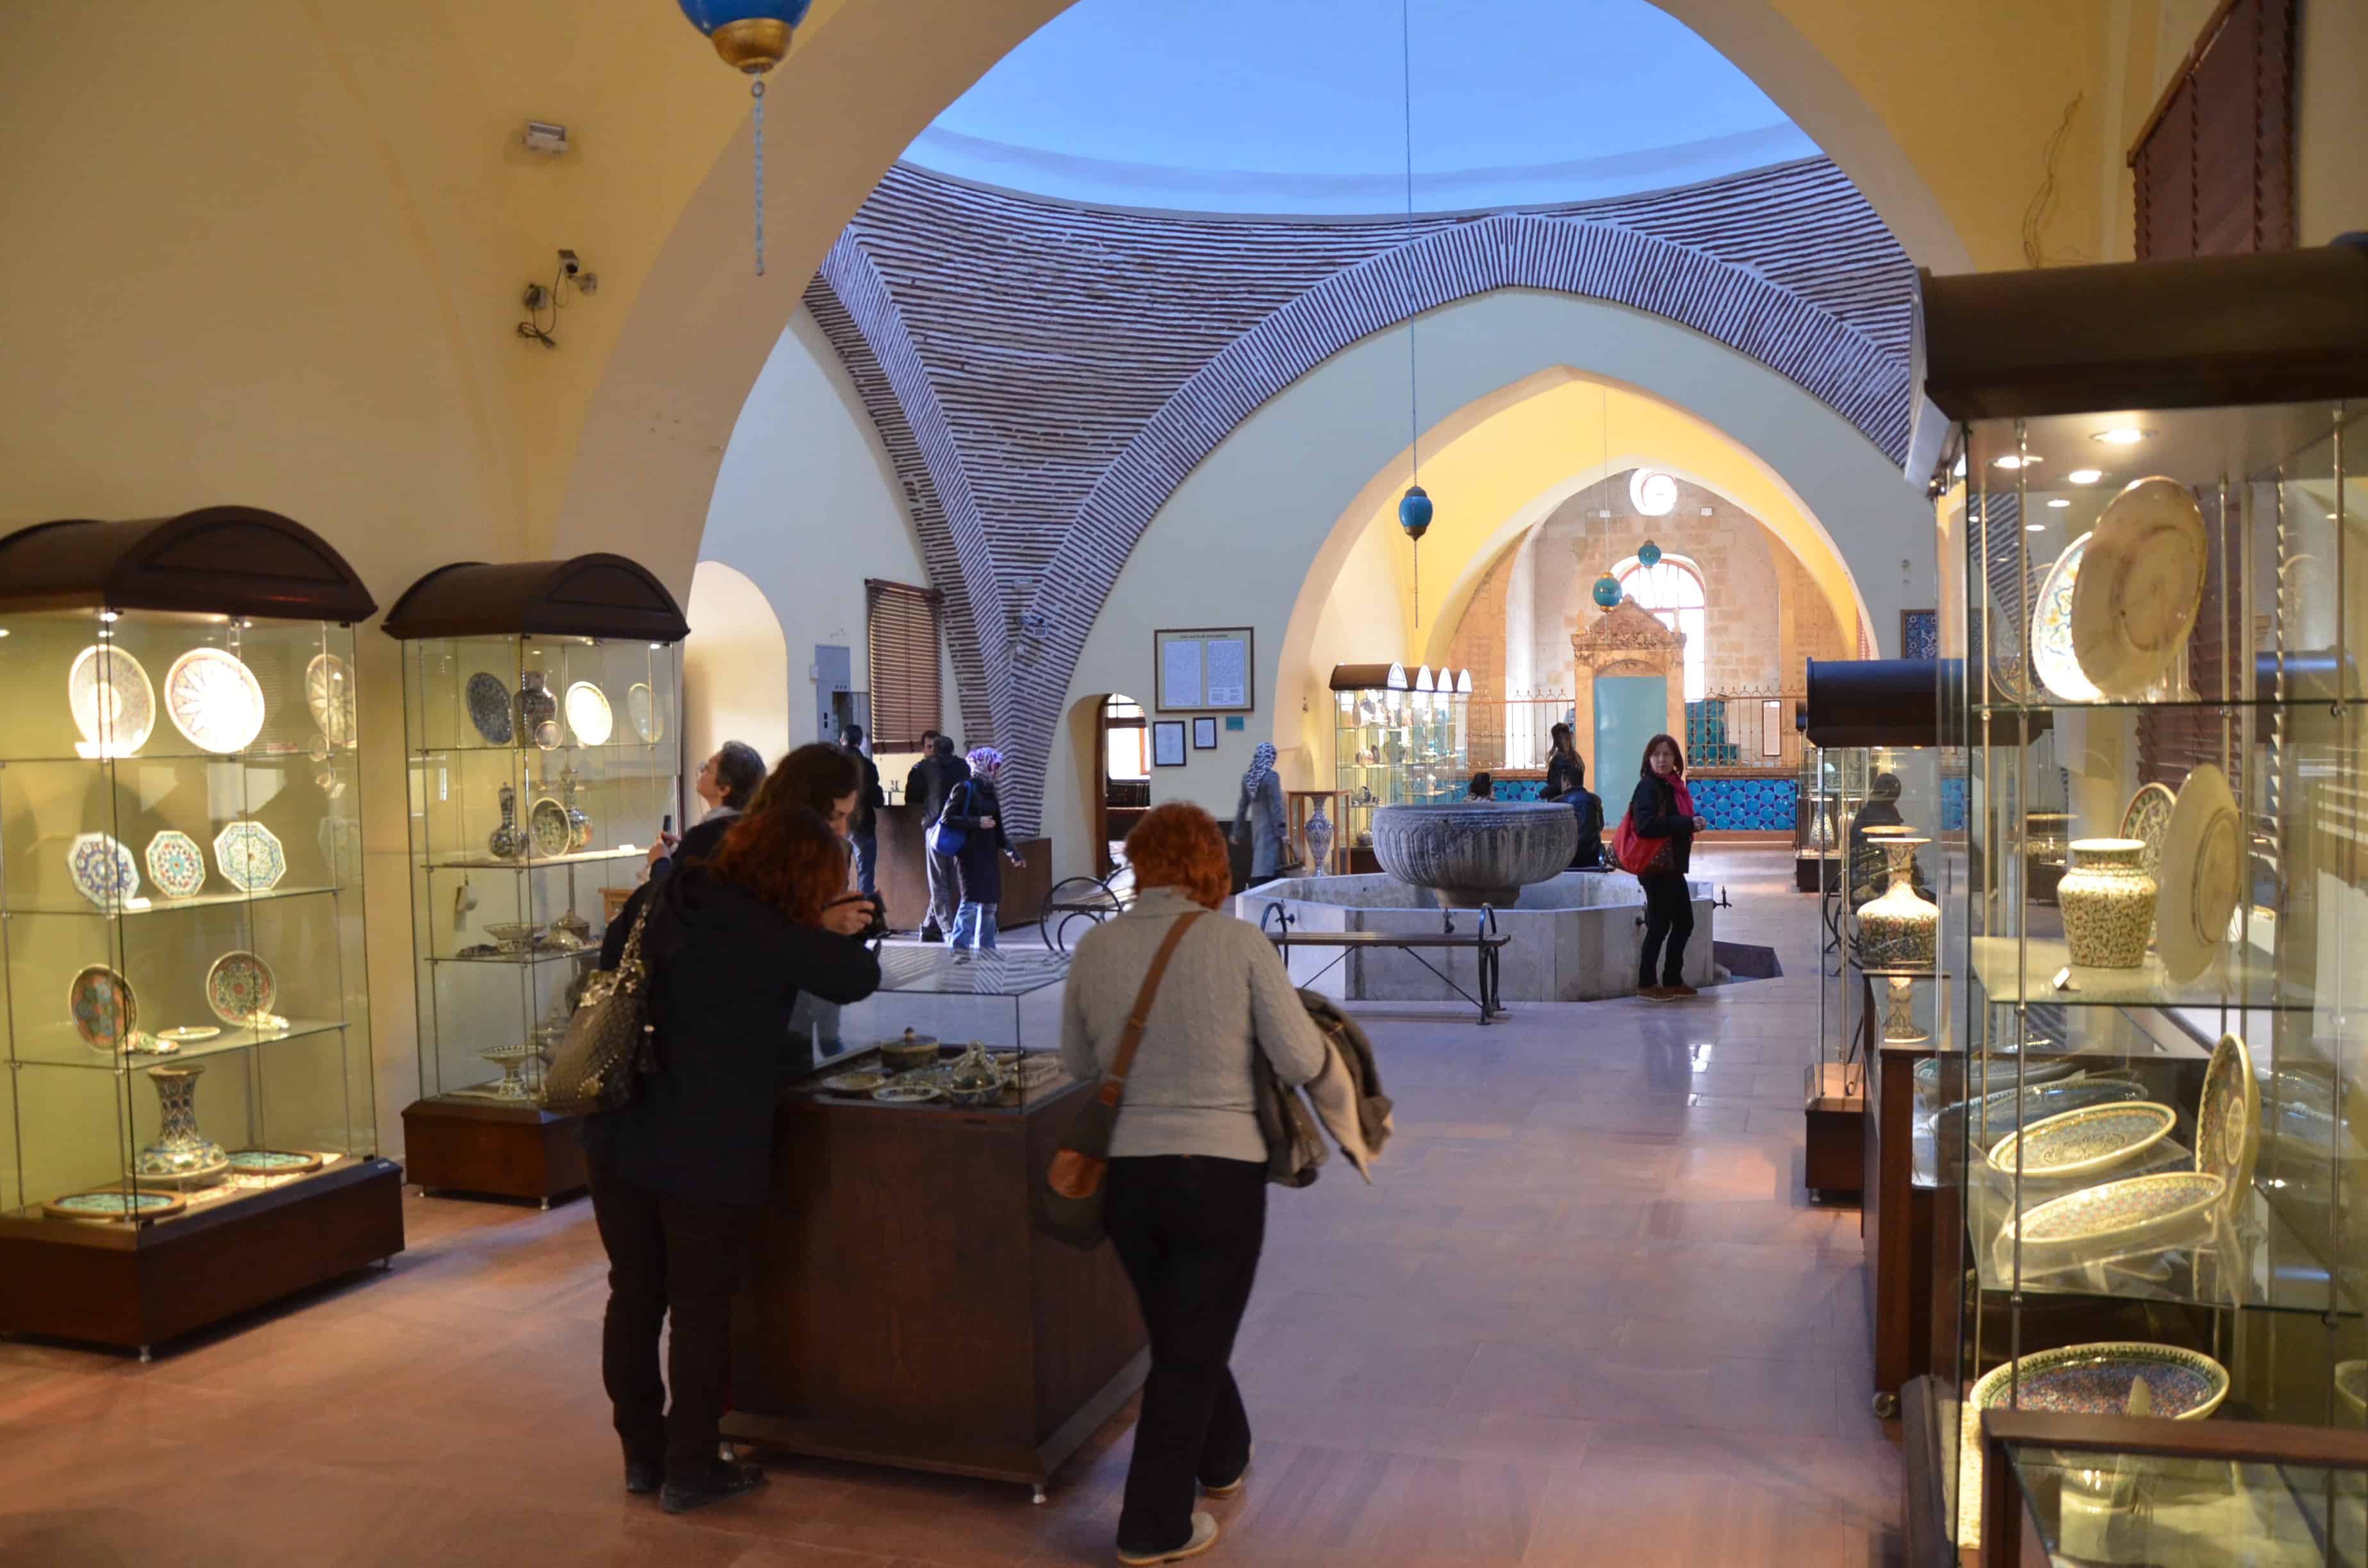 Tile Museum in Kütahya, Turkey